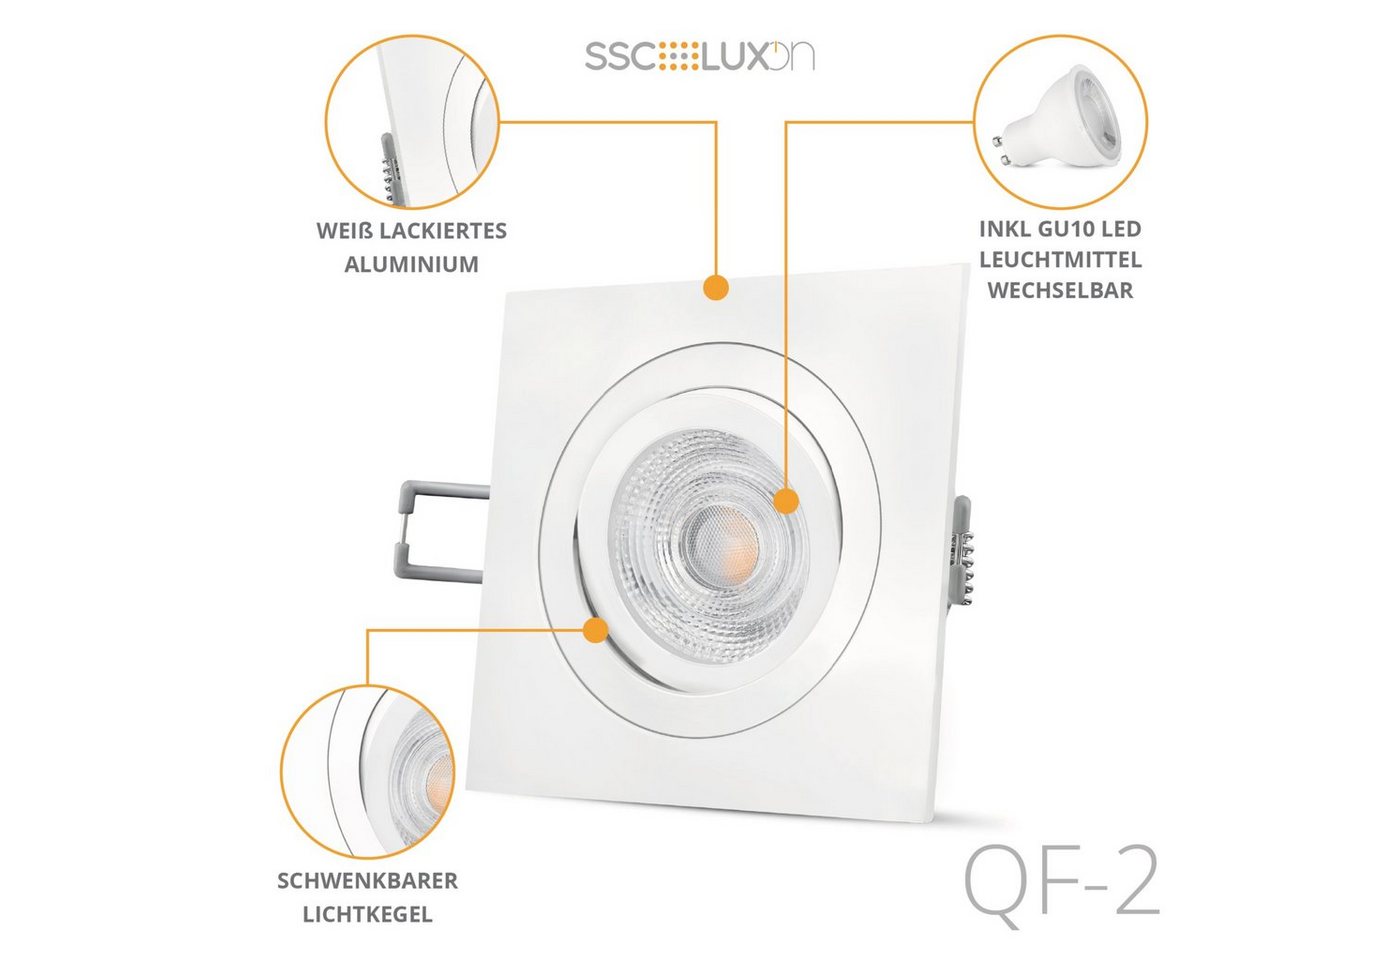 SSC-LUXon LED Einbaustrahler QF-2 LED Einbaustrahler weiss quadratisch schwenkbar mit GU10 LED, Warmweiß von SSC-LUXon